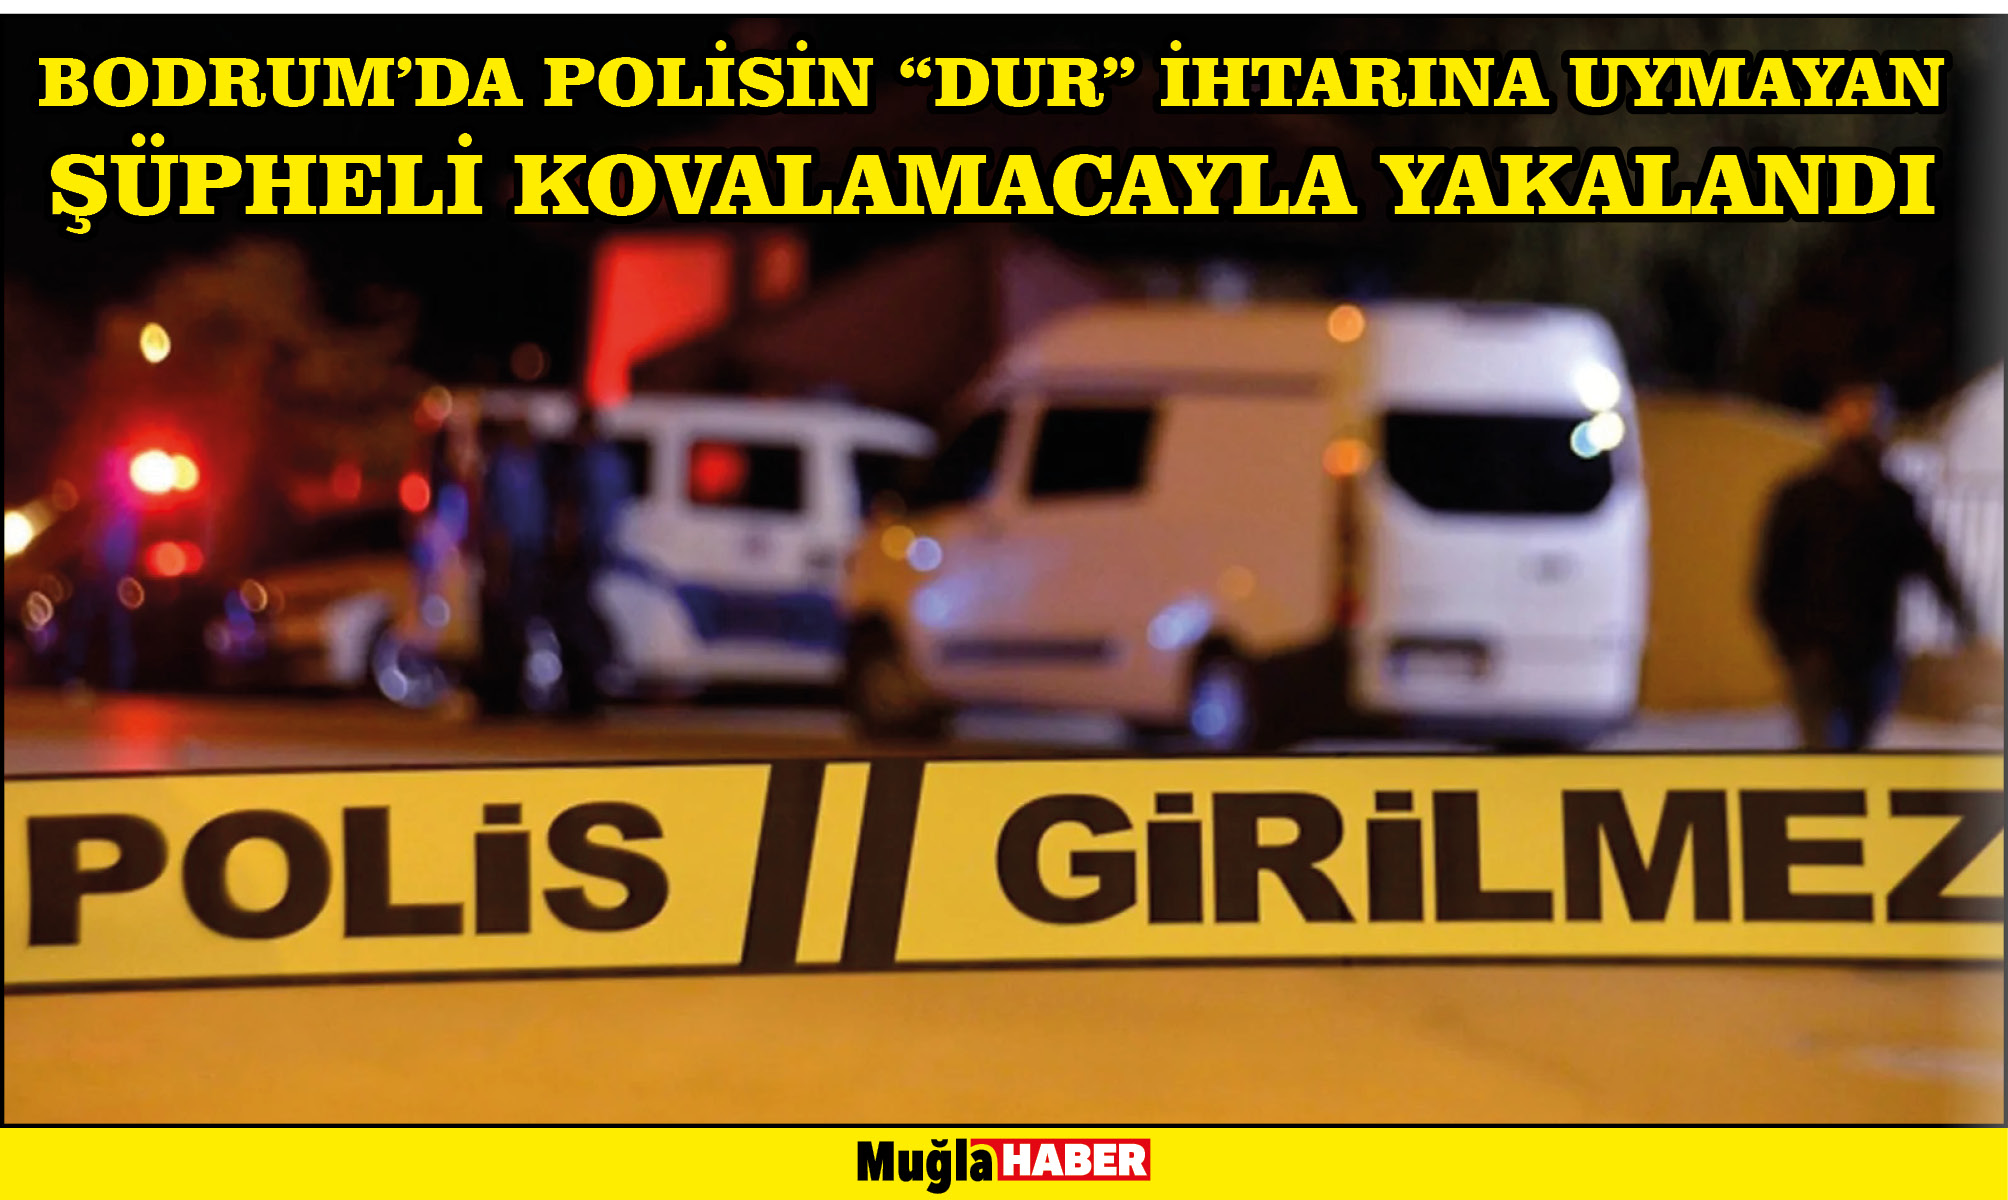 Bodrum'da polisin "dur" ihtarına uymayan şüpheli kovalamacayla yakalandı